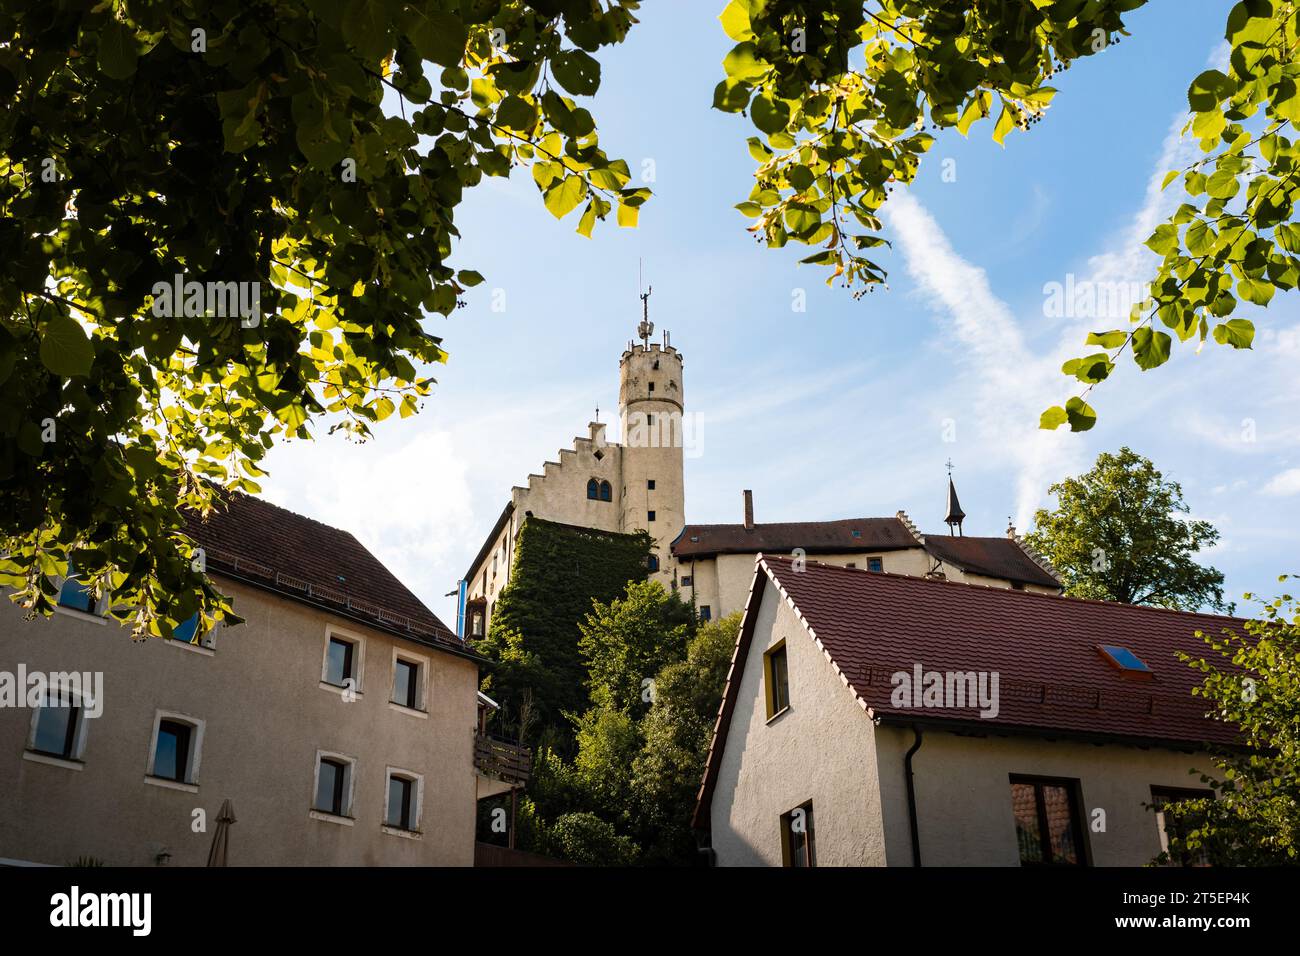 Edificio del castello di Gößweinstein in bella luce del sole. L'architettura medievale sulla collina è una destinazione turistica e un'attrazione in Franconia. Foto Stock